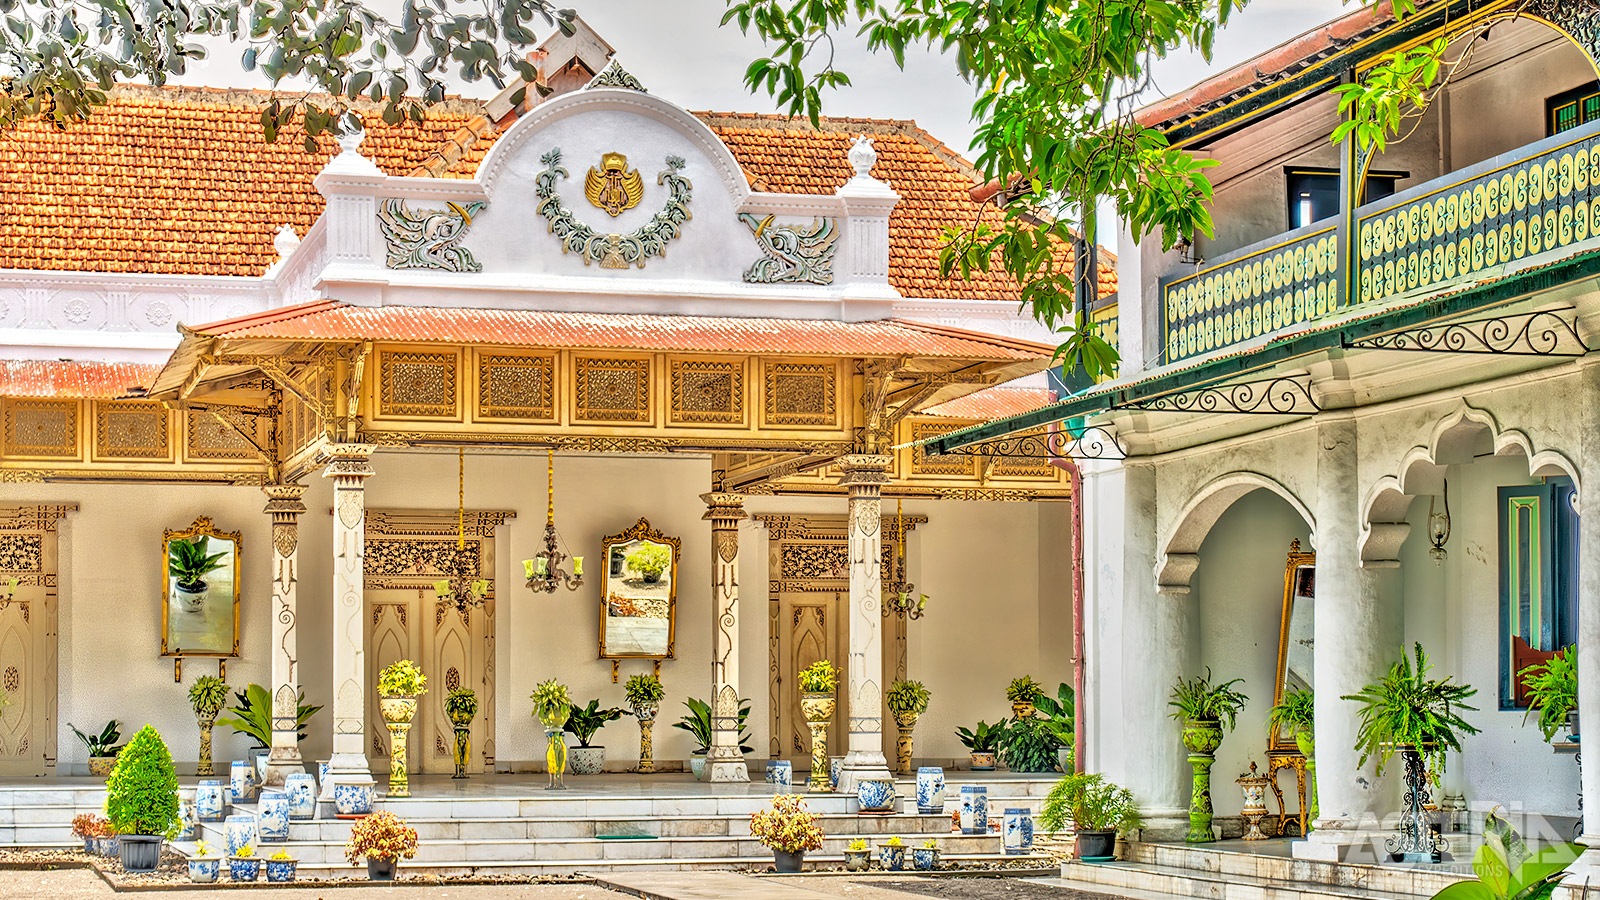 In het centrum van Yogyakarta ligt het ommuurde paleis van de sultan, het kraton, dat stamt uit 1755